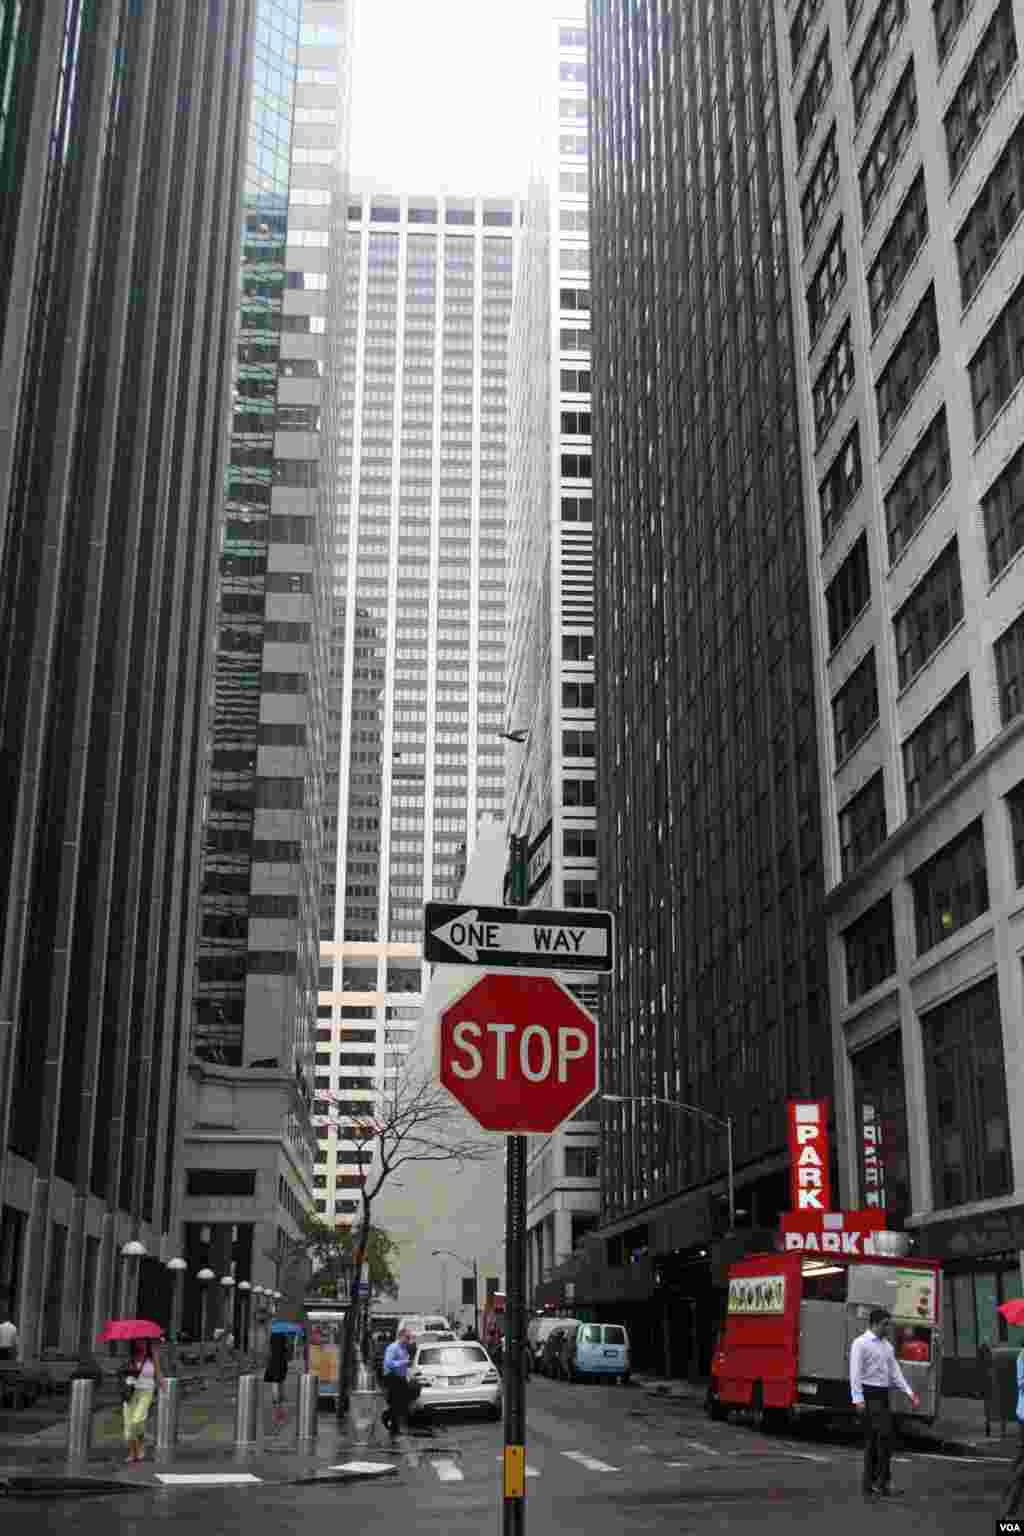 Los rascacielos de decenas de pisos de altitud son una de las se&ntilde;as de identidad de la urbe neoyorkina. Puede empezar su visita en Manhattan, donde se encuentra la zona de Wall Street, centro financiero de la ciudad. 